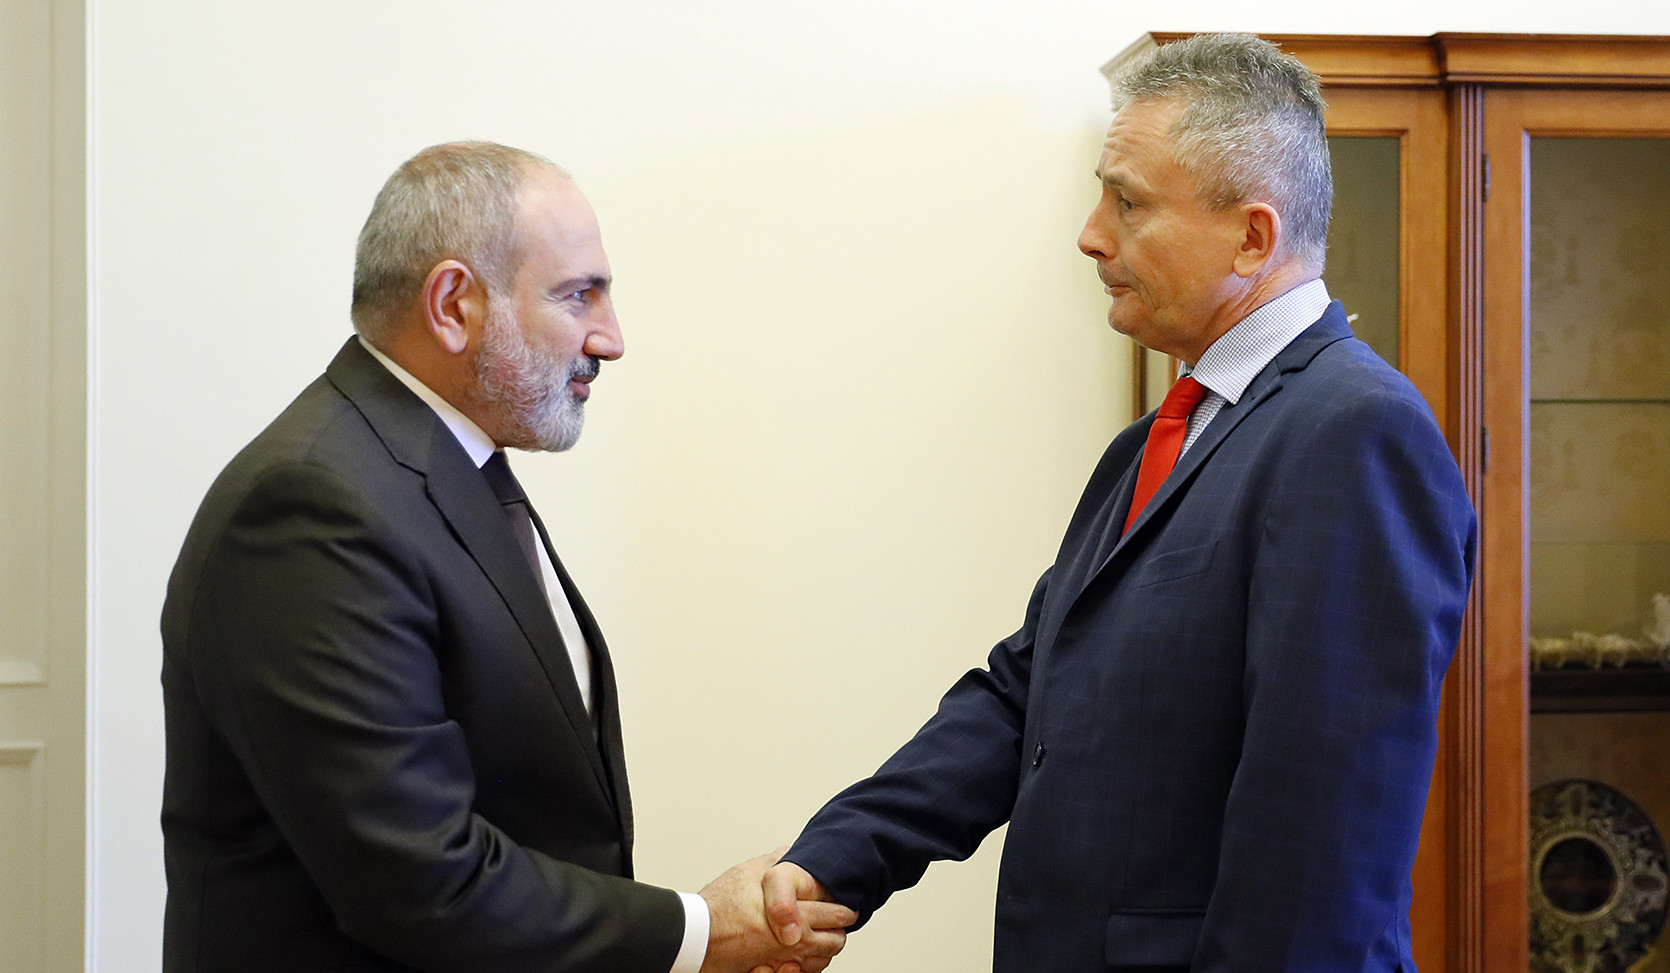 Փաշինյանն ու Լեհաստանի դեսպանը մտքեր են փոխանակել հայ-լեհական հարաբերությունների, Հայաստան-ԵՄ փոխգործակցության հարցերի շուրջ